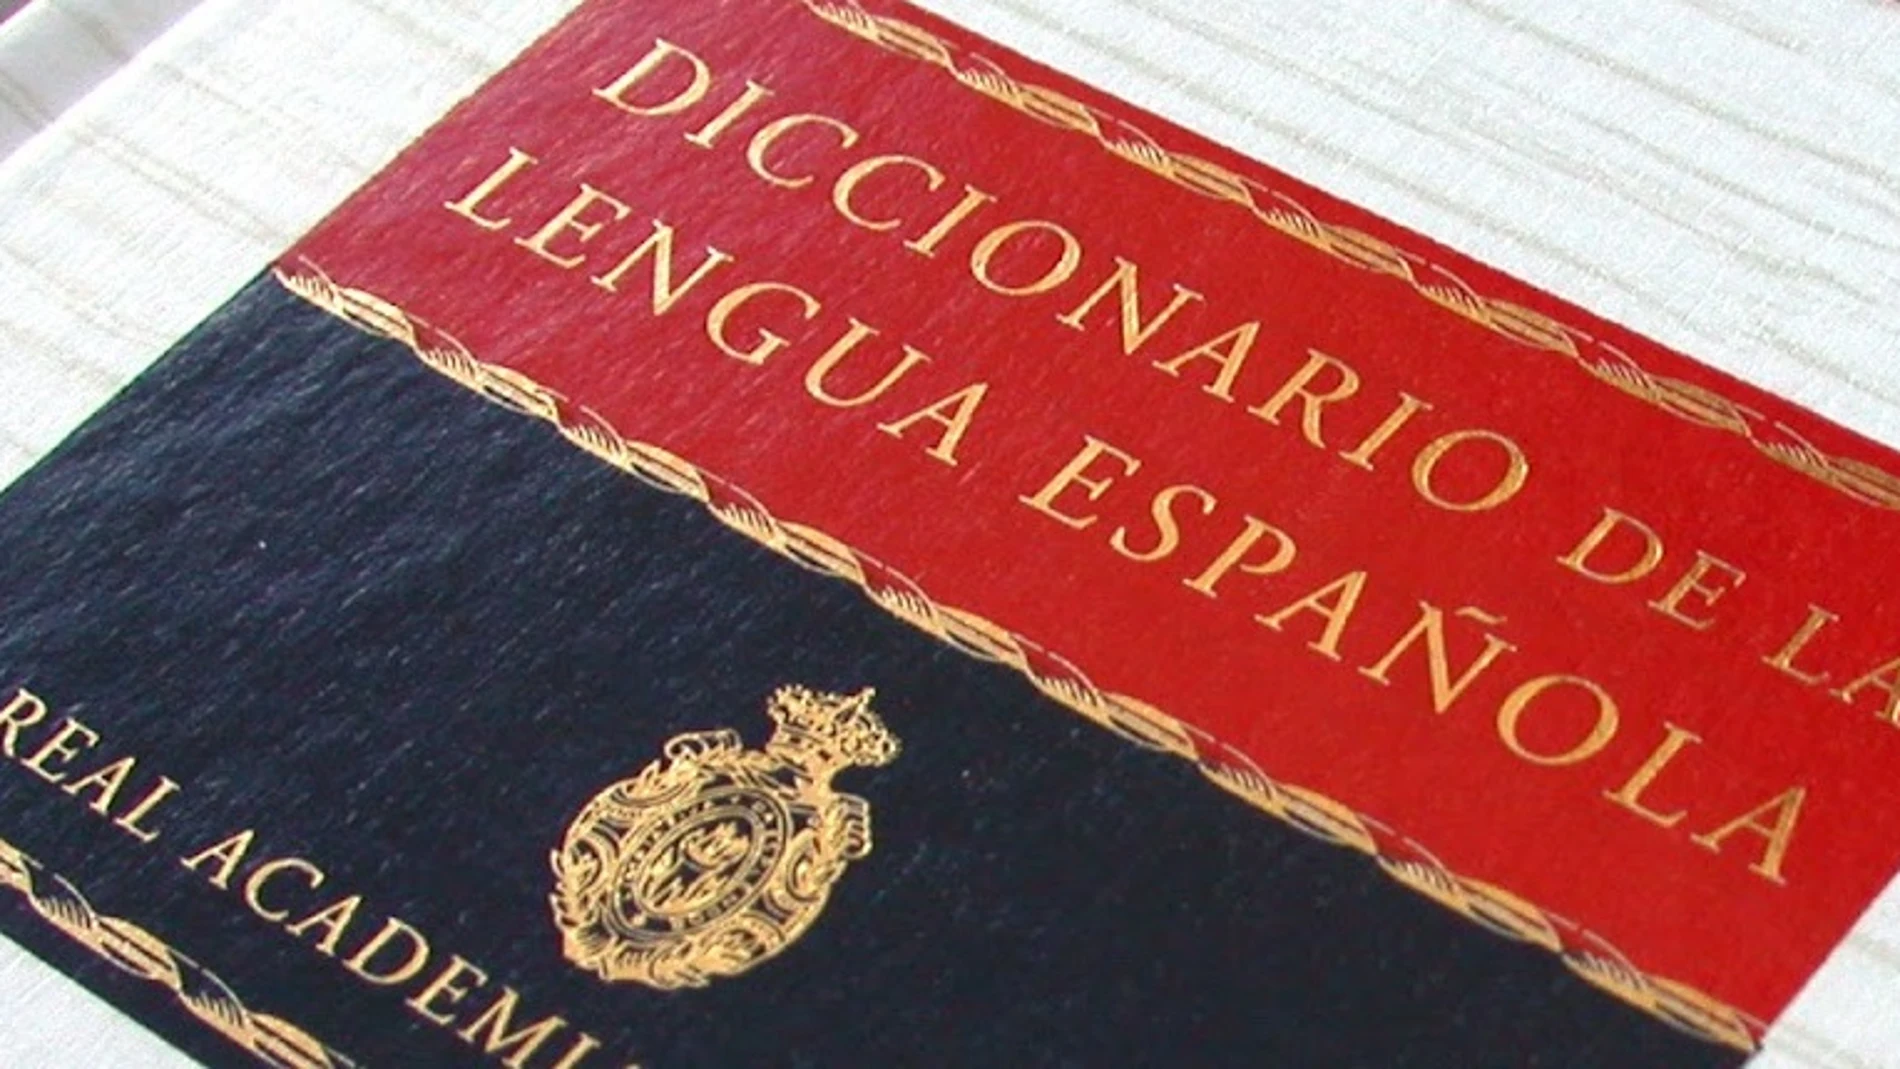 palabra, Definición, Diccionario de la lengua española